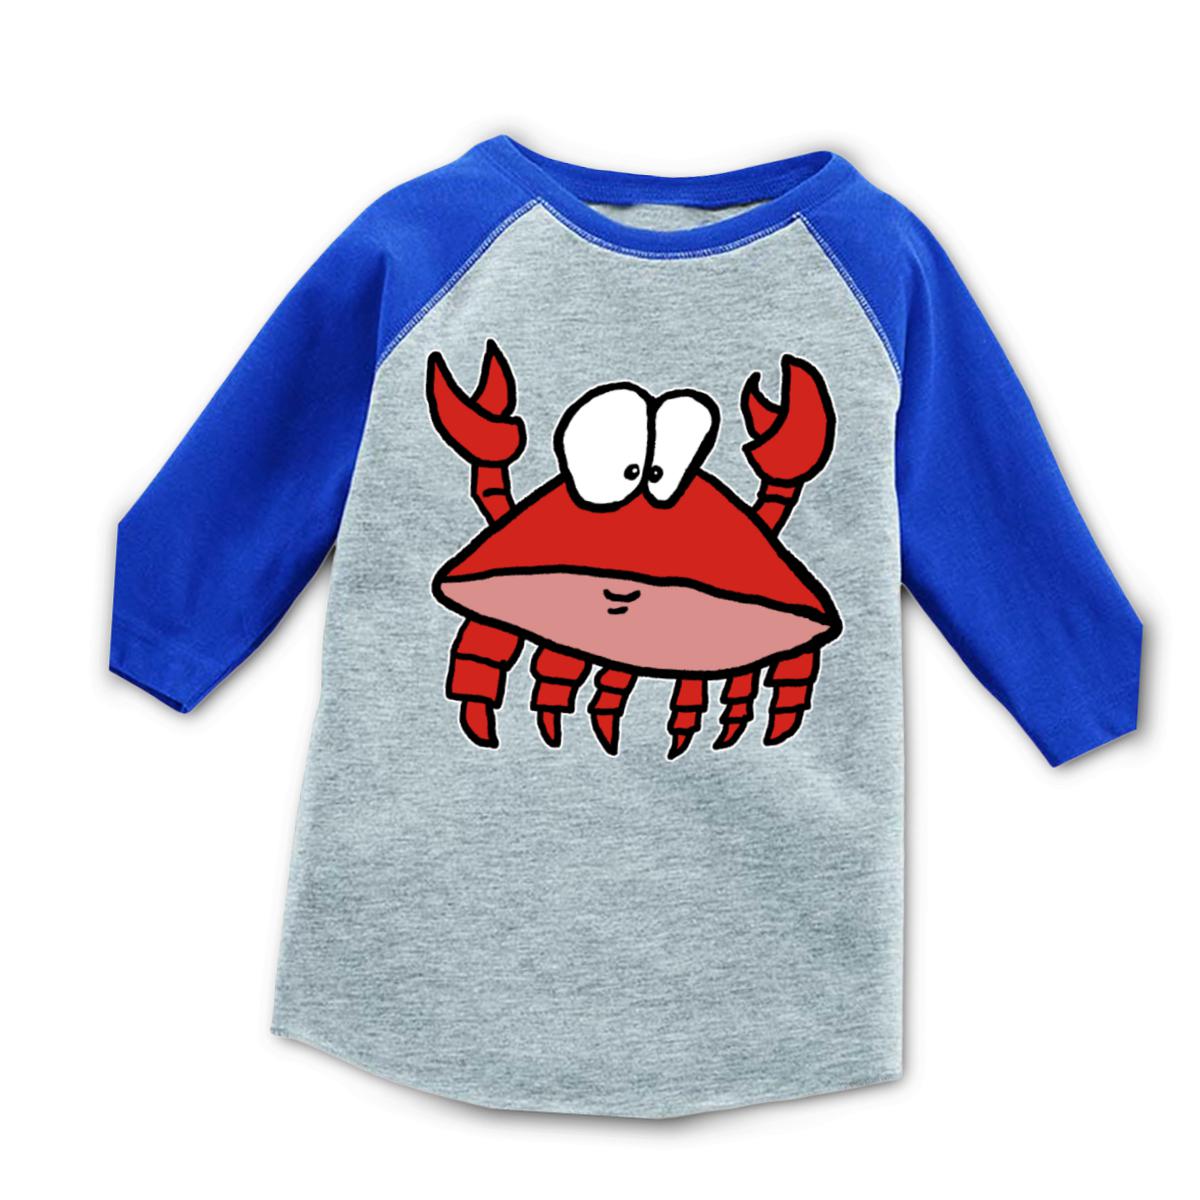 Crab 2.0 Toddler Raglan Tee 4T heather-royal